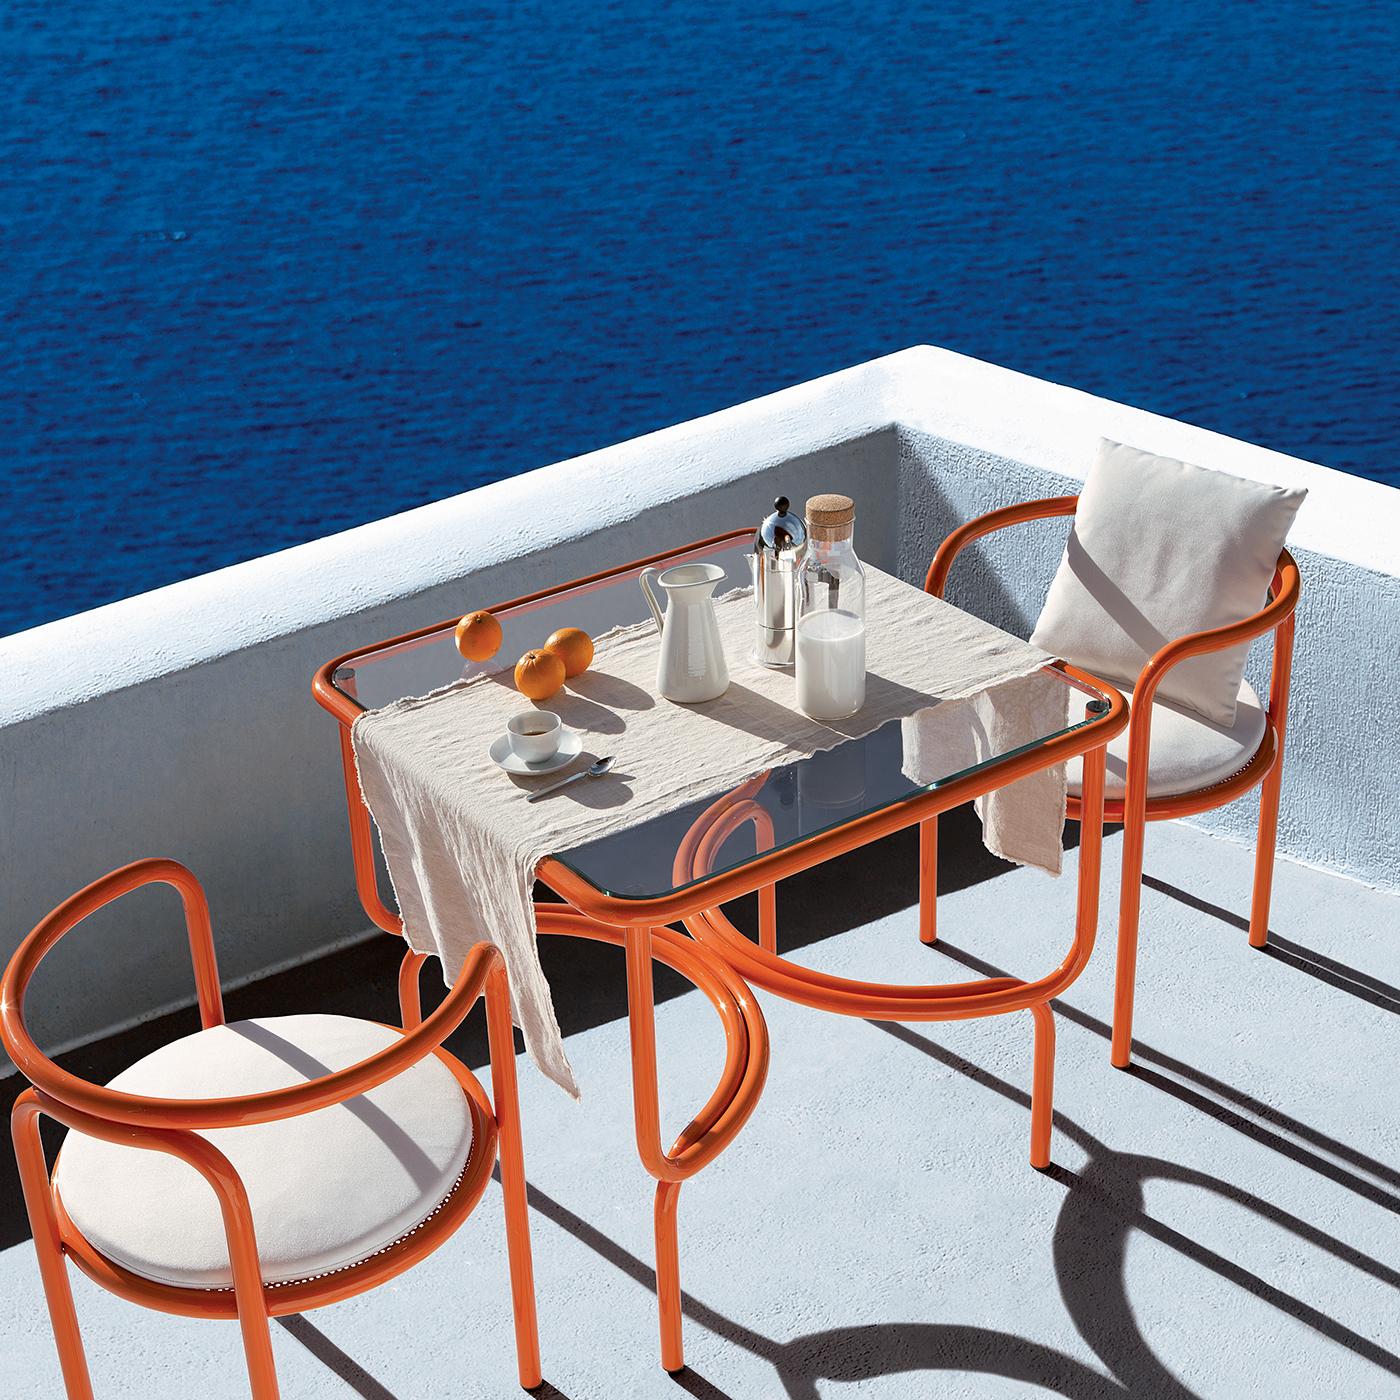 Dieser Stuhl aus der Locus Solus Collection ist das perfekte Stück, um einer Terrasse, einem Garten oder einem Poolbereich Farbe und Persönlichkeit zu verleihen. Er verbindet funktionelles Design mit einer einzigartigen Ästhetik. Das leuchtend